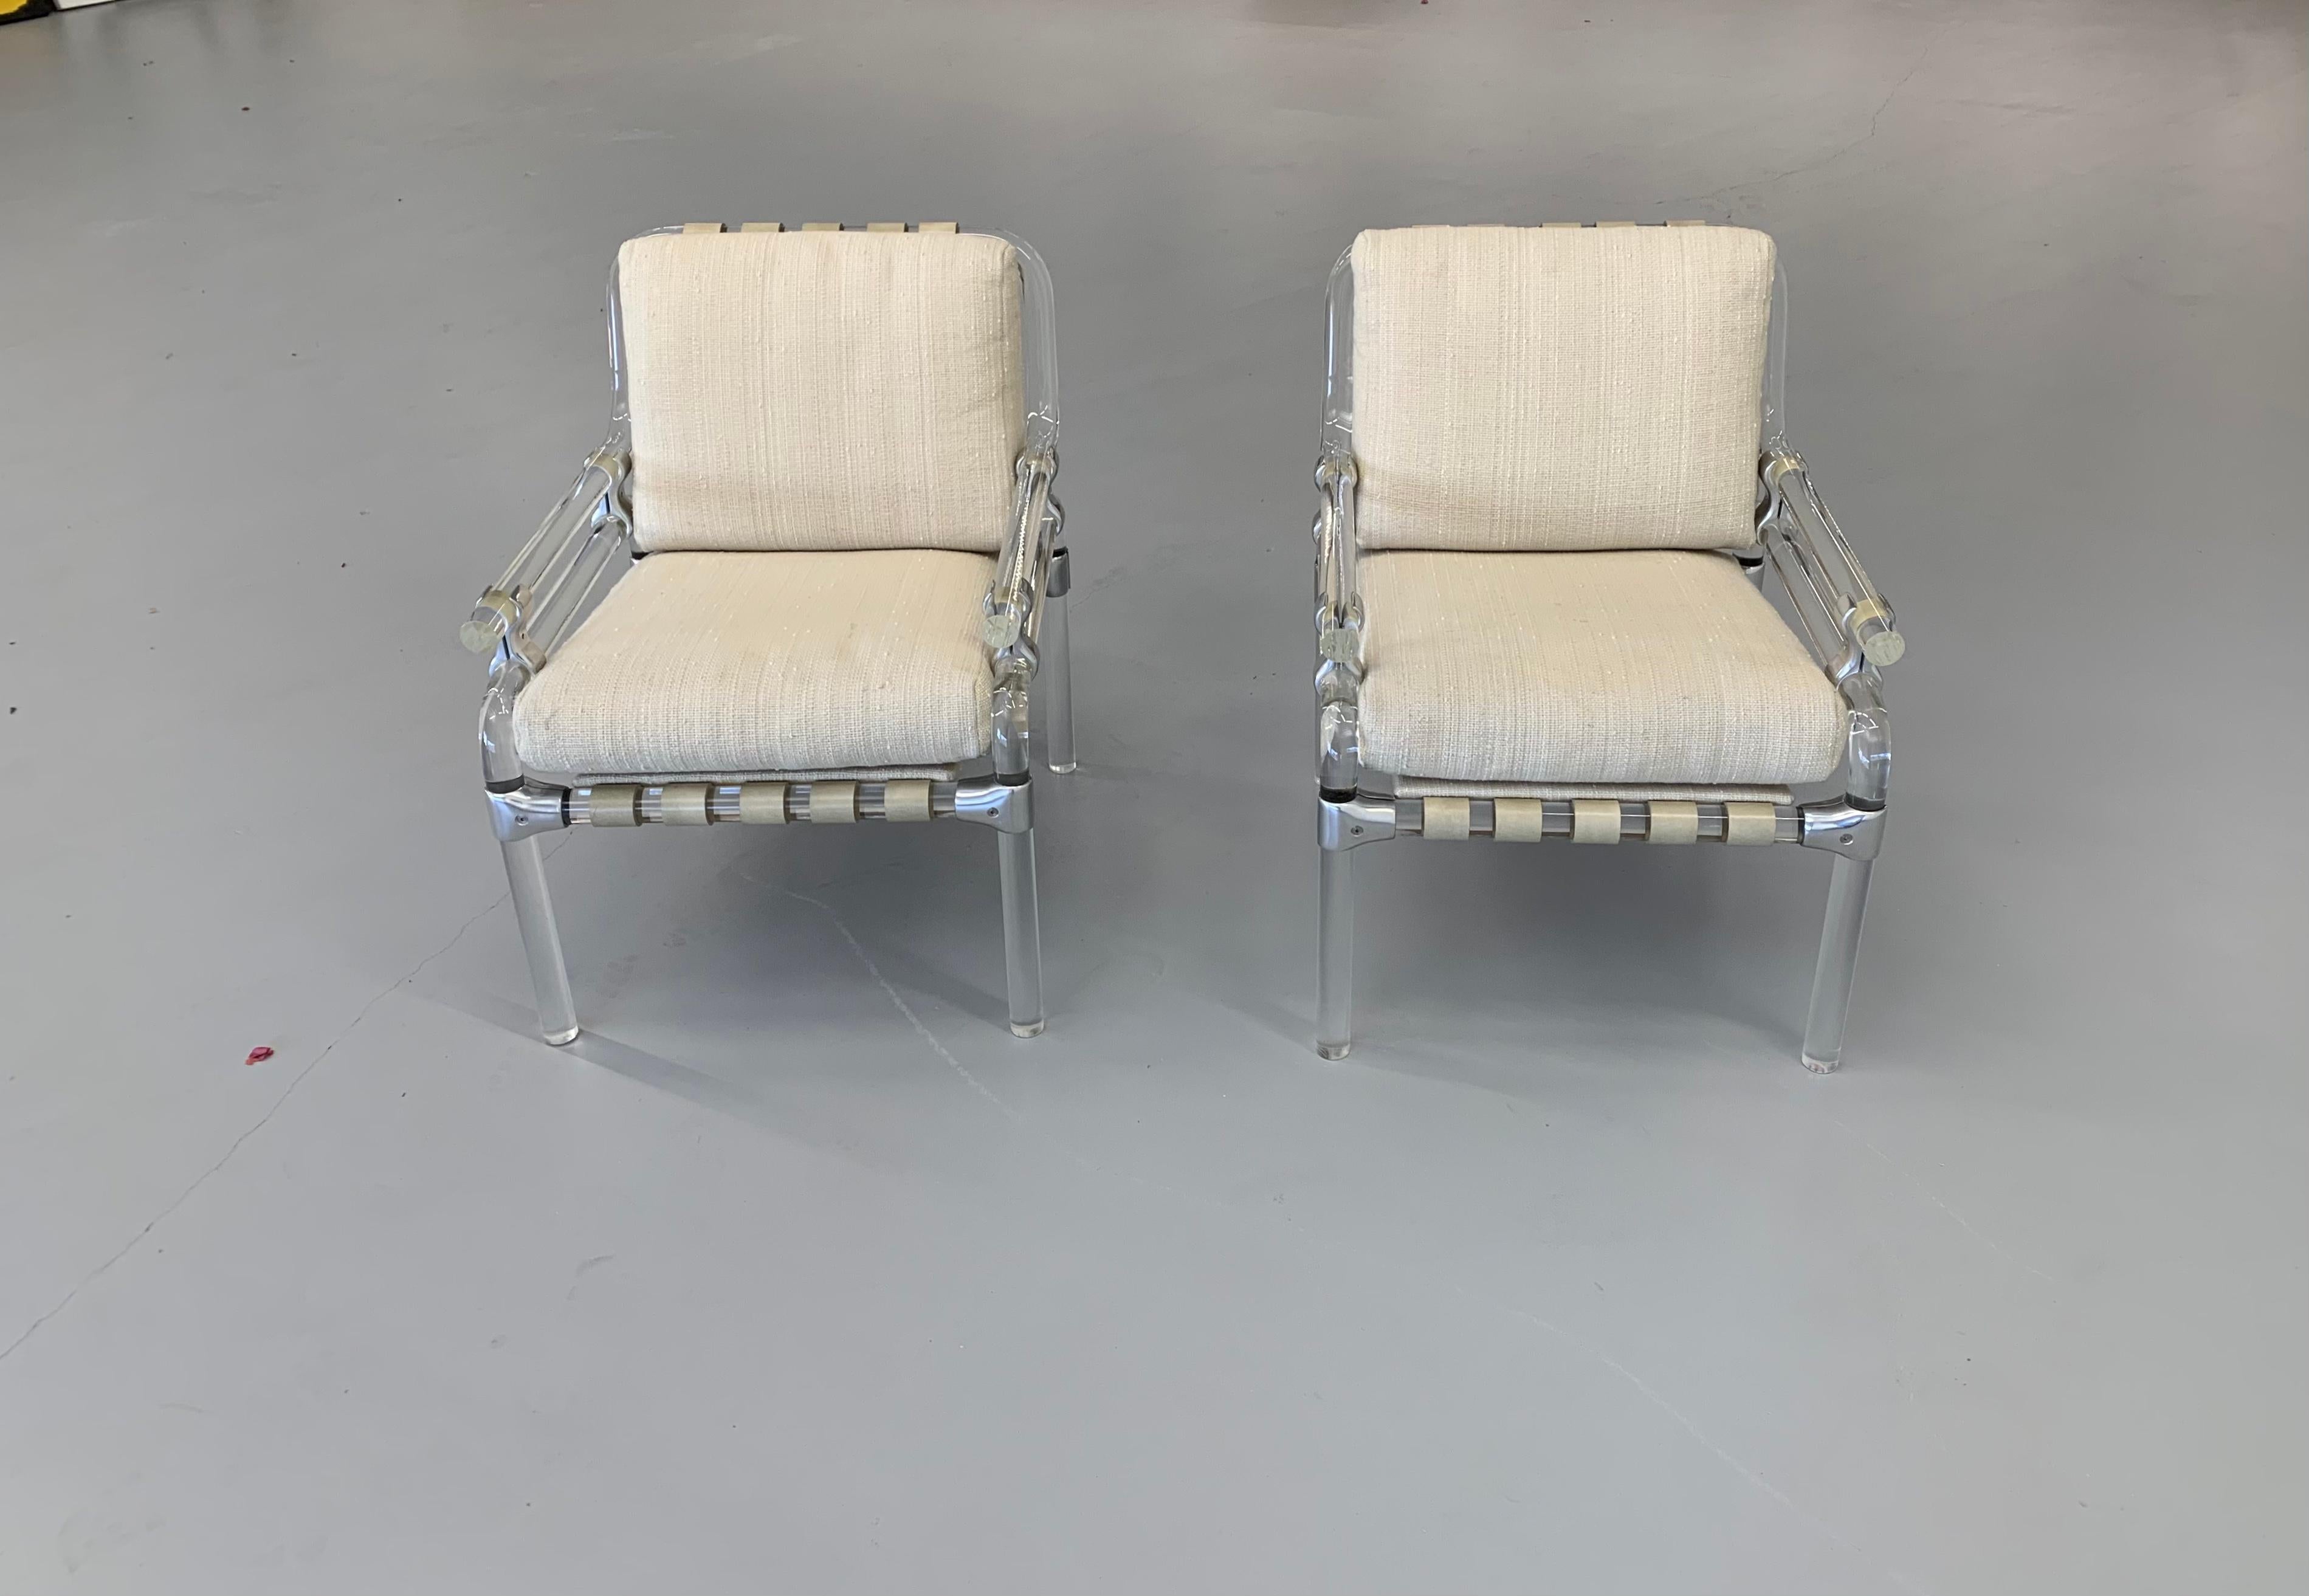 Une belle paire de chaises en lucite et métal par Jeff Messerschmidt. Il s'agit de chaises Pipeline 1000, numérotées 37 et 38, 1973. Les sangles en cuir sont d'origine et les coussins sont d'époque récente et en bon état. Excellent état général pour